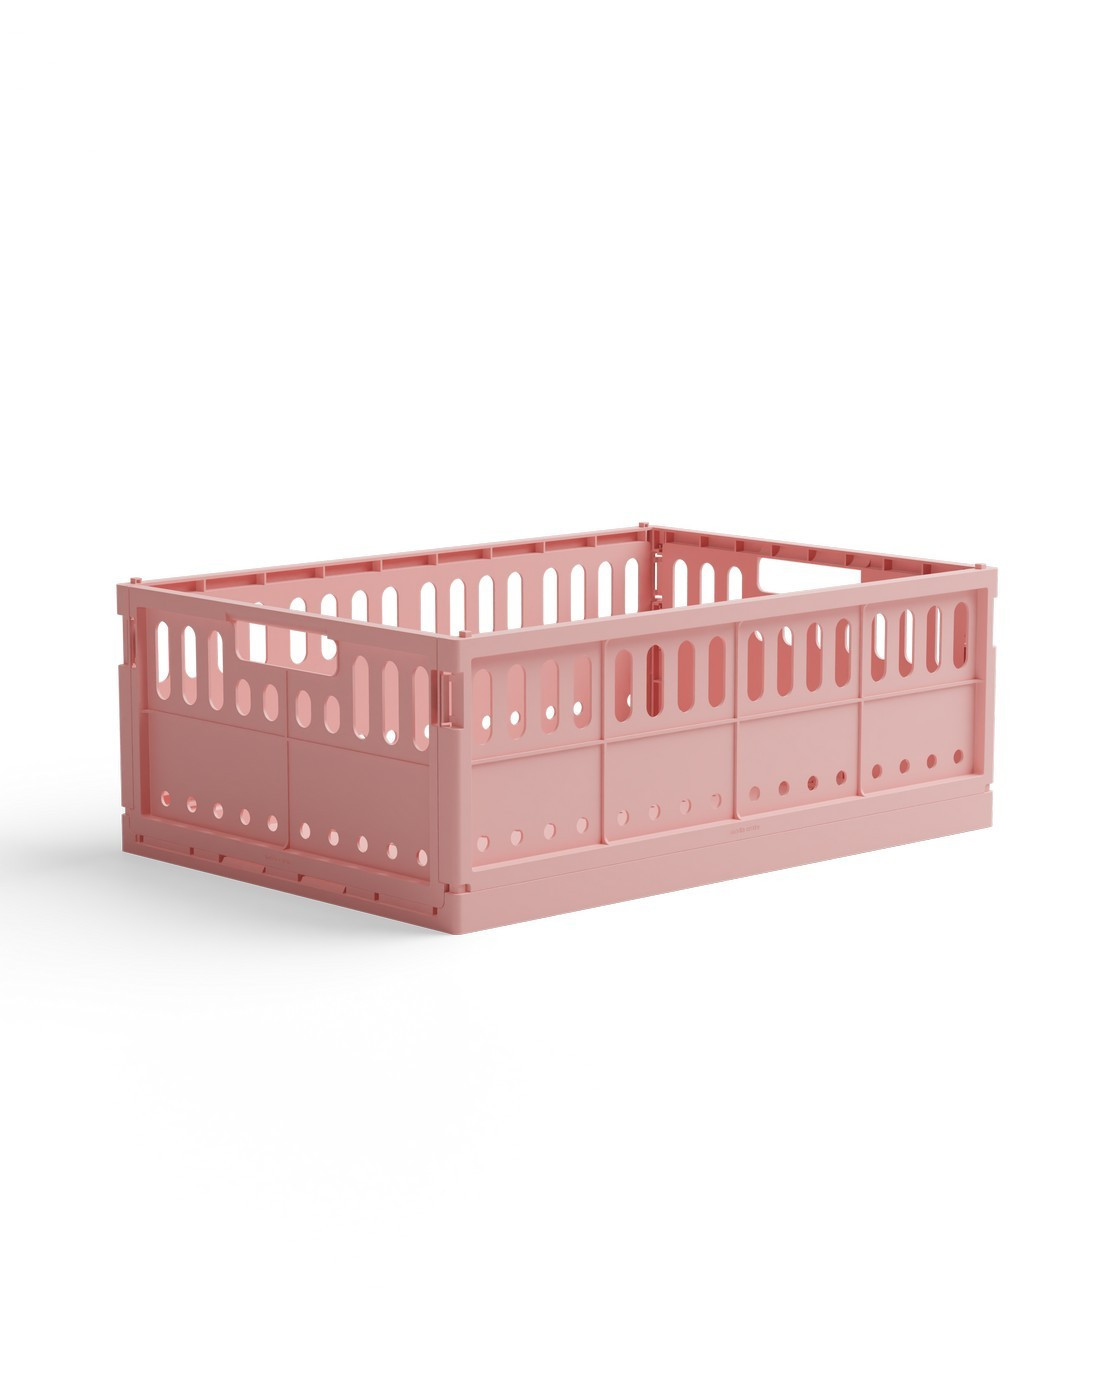 Skládací přepravka maxi Made Crate - candyfloss pink